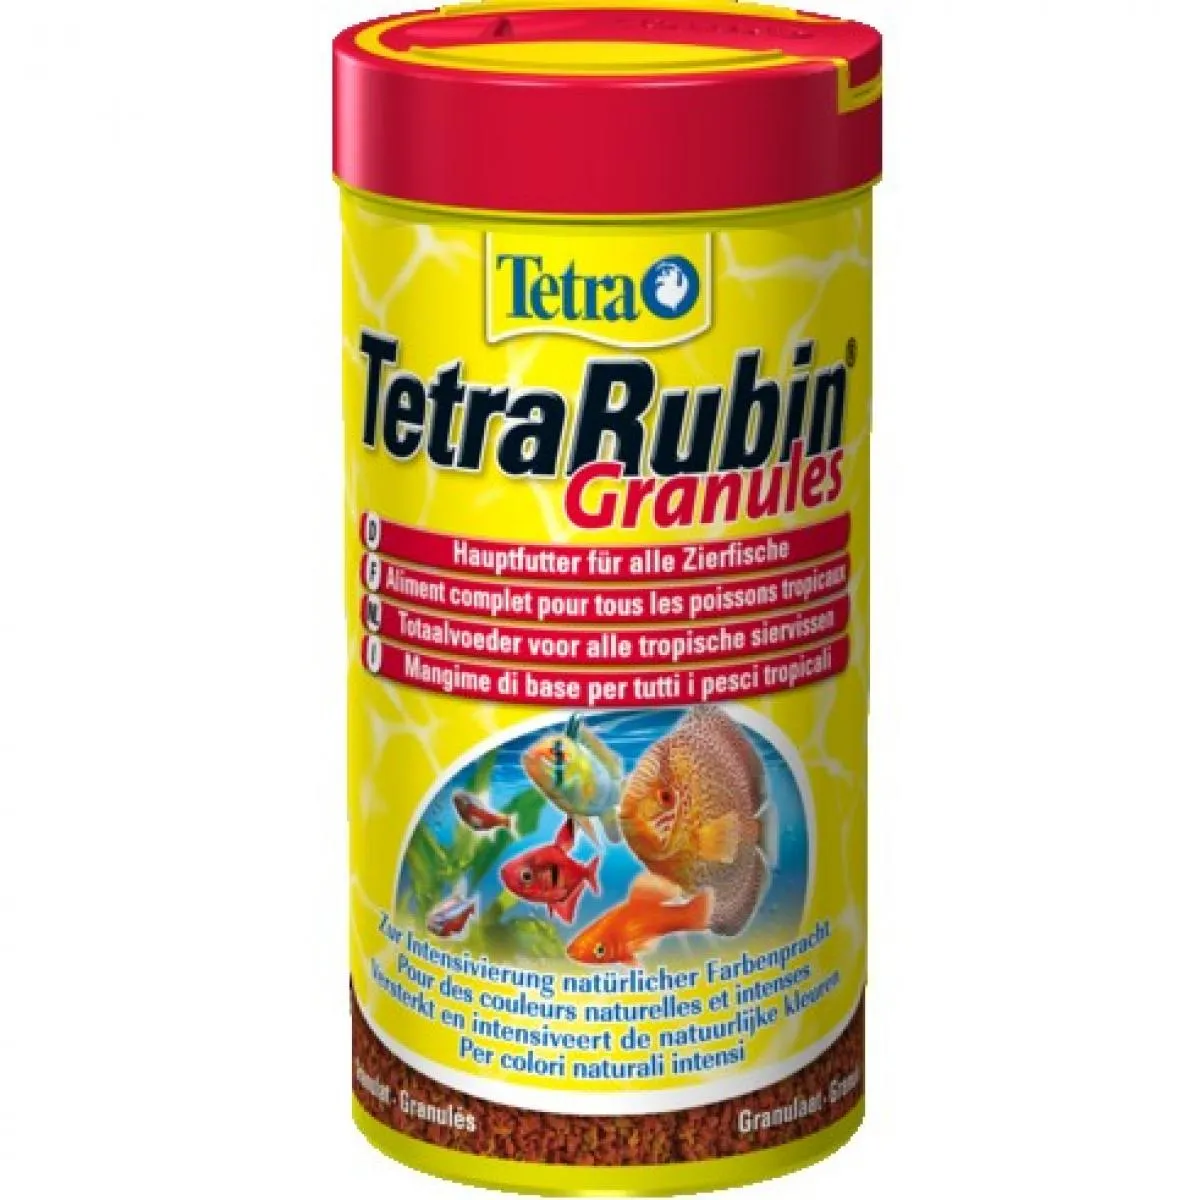 TetraRubin Granules - Храна за тропически рибки с оцветители гранули 250 мл